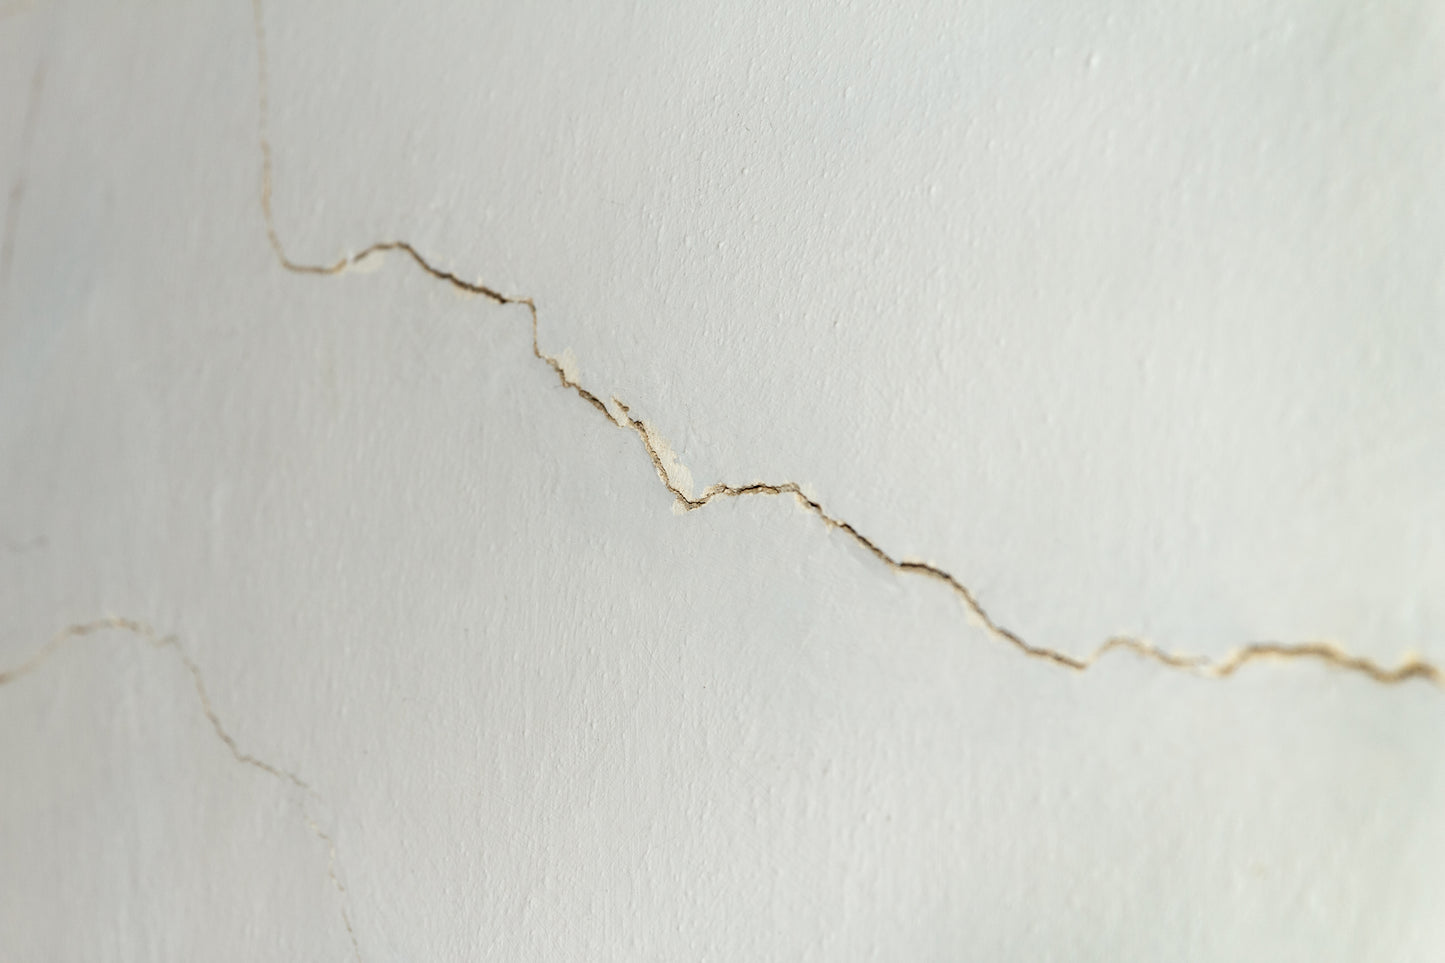 Drywall Repair (over 1" in diameter)